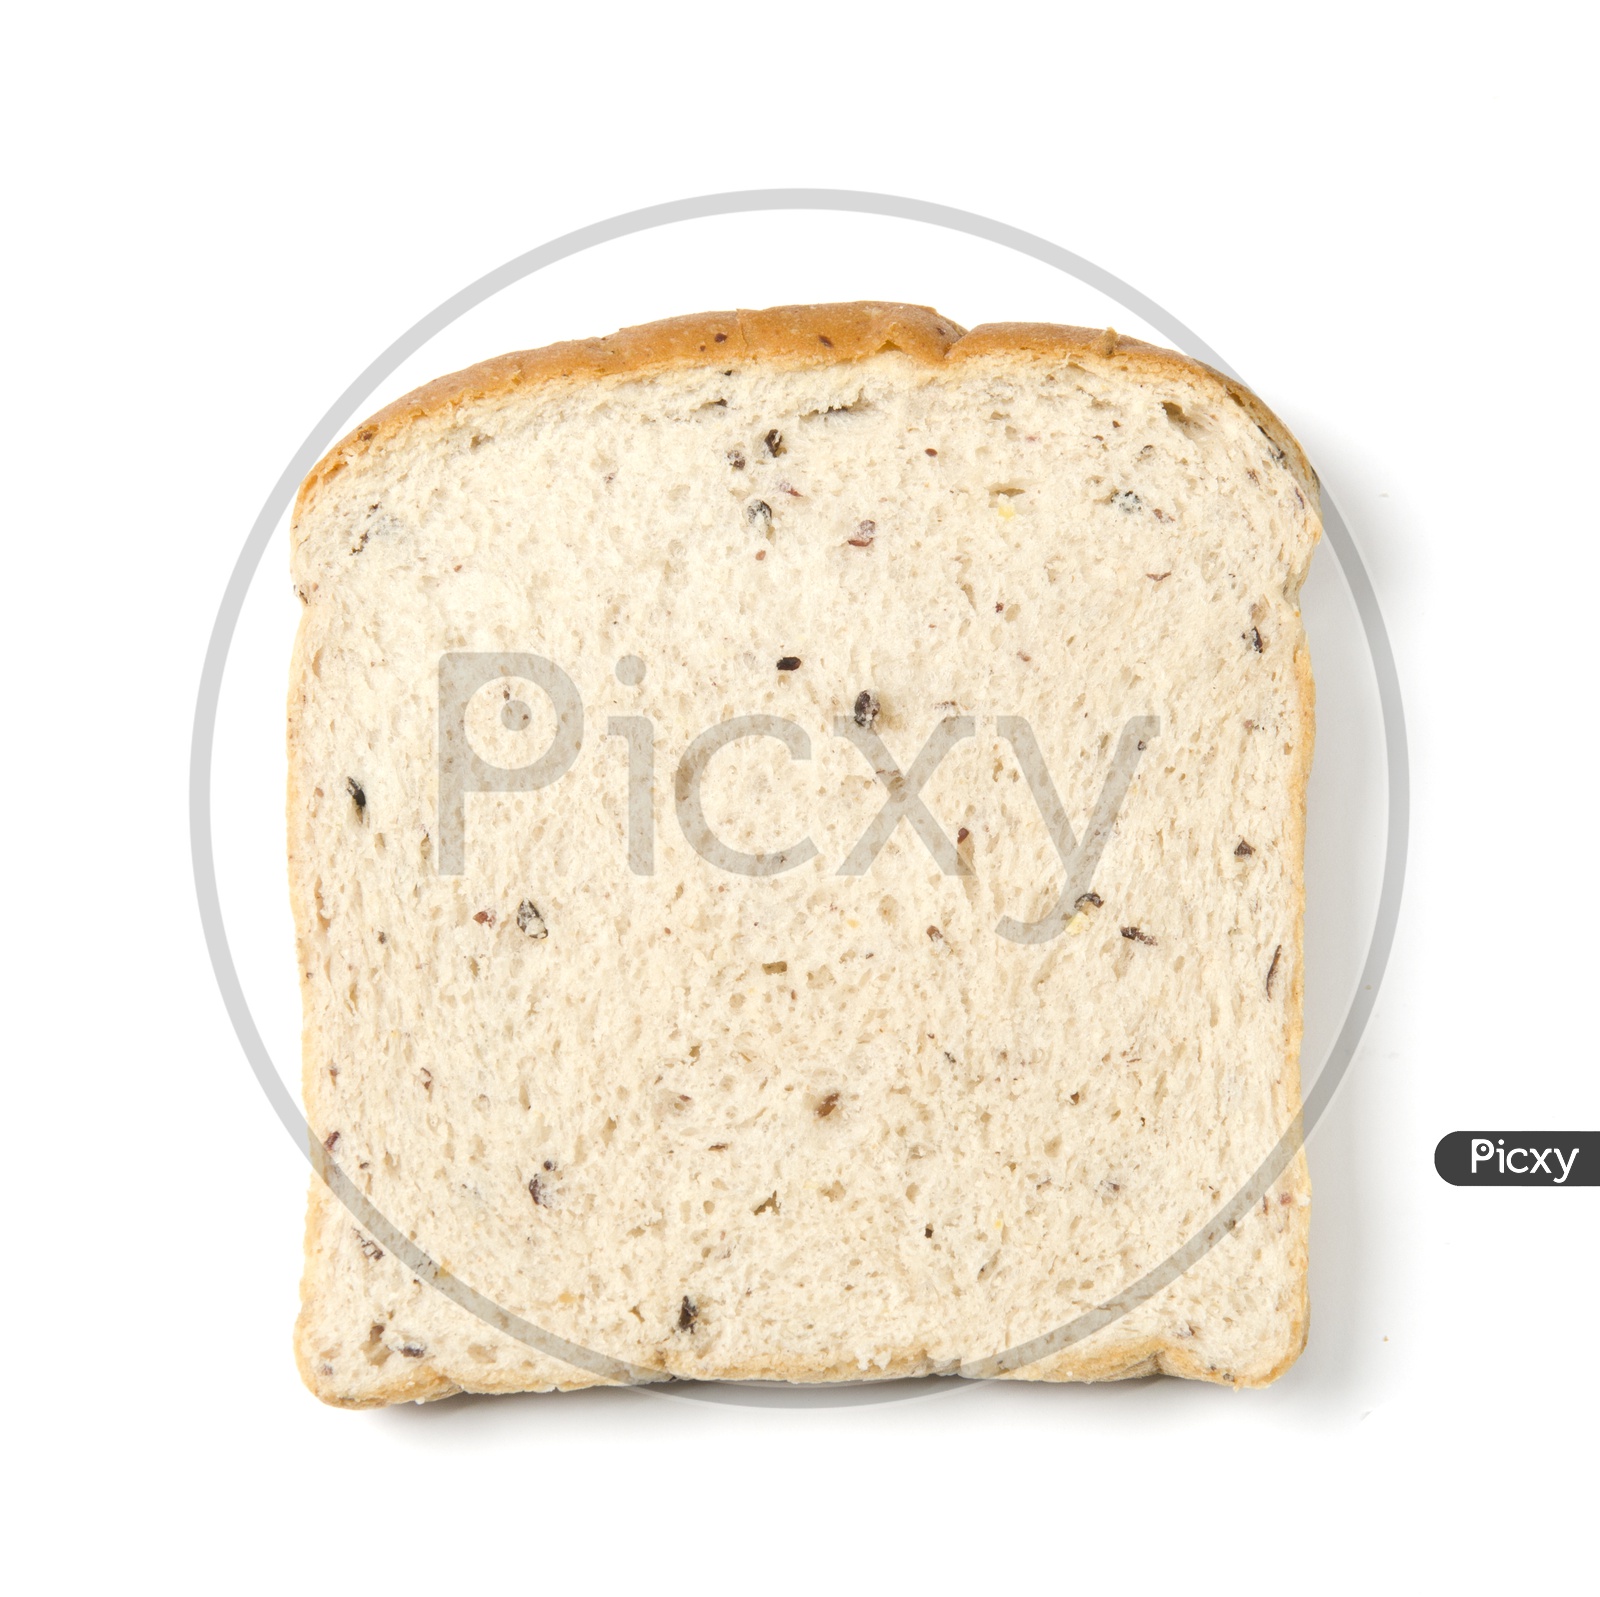 A Bread slice